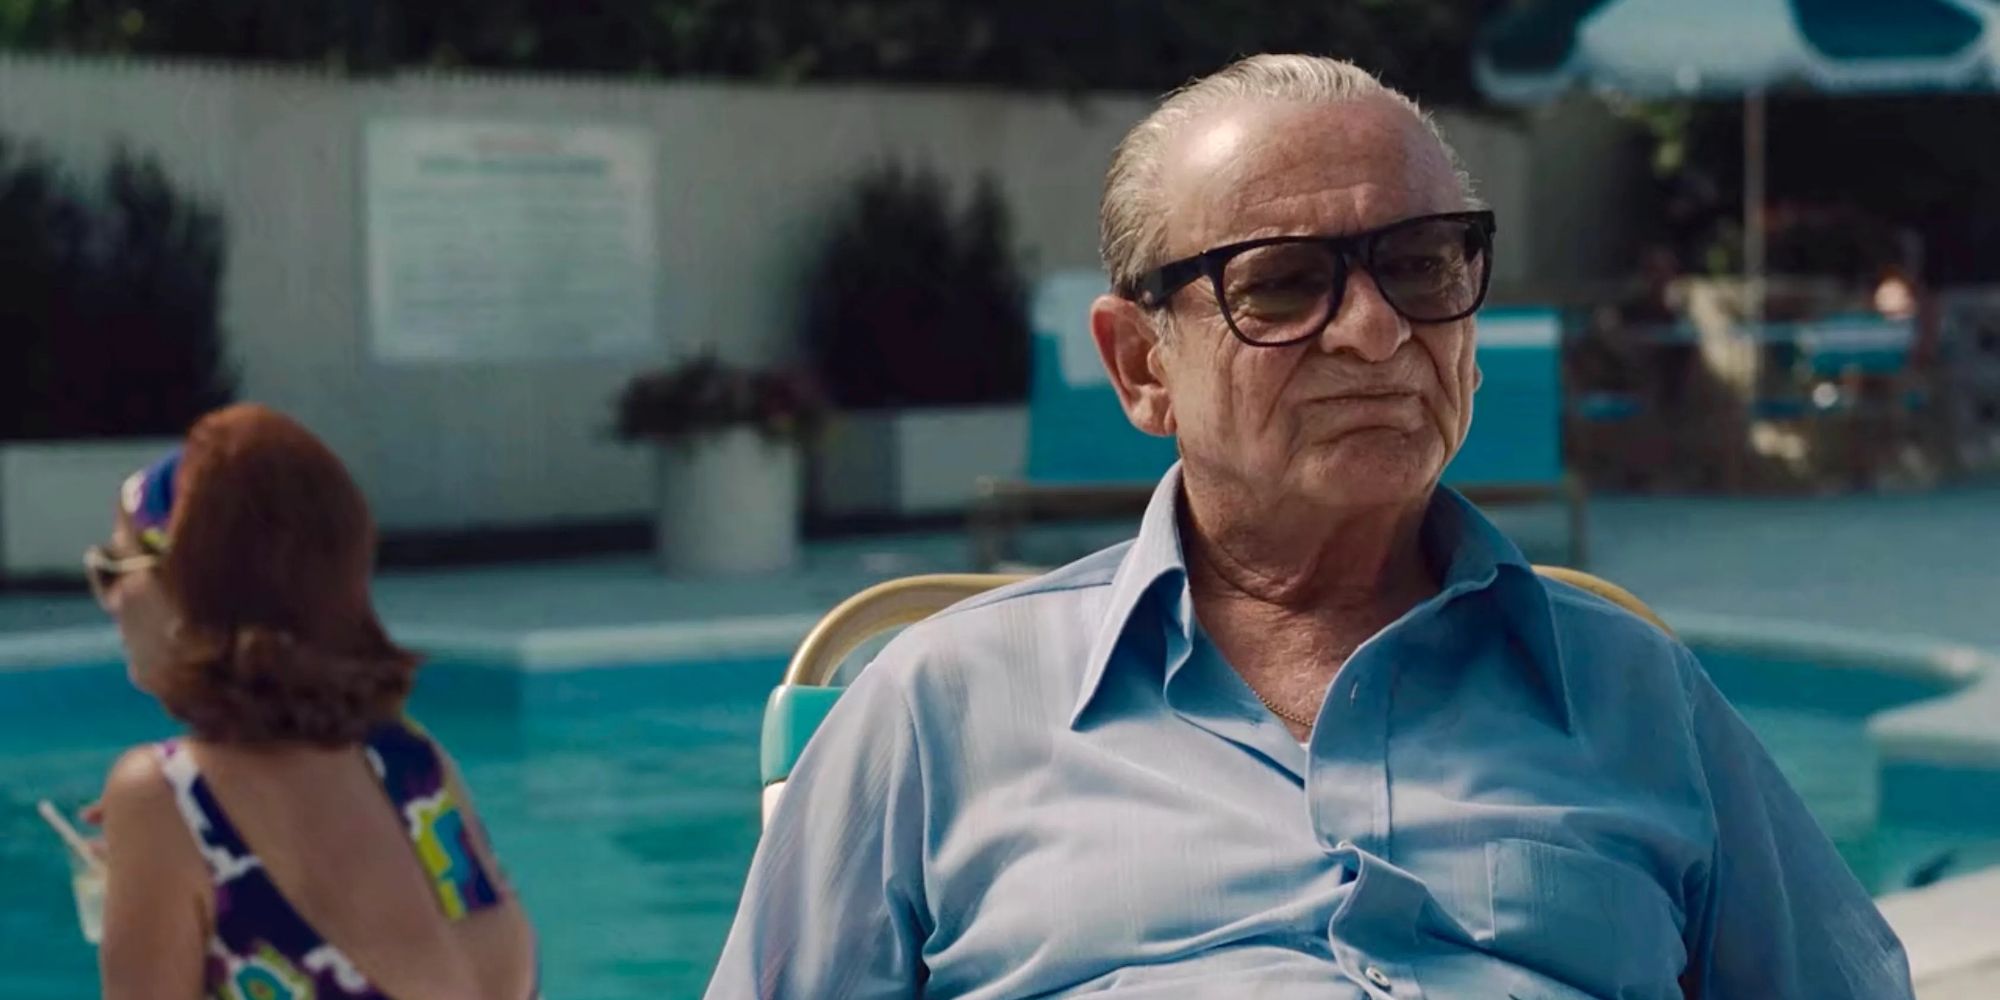 Russell Bufalino (Joe Pesci) sits beside a pool in 'The Irishman' (2019)